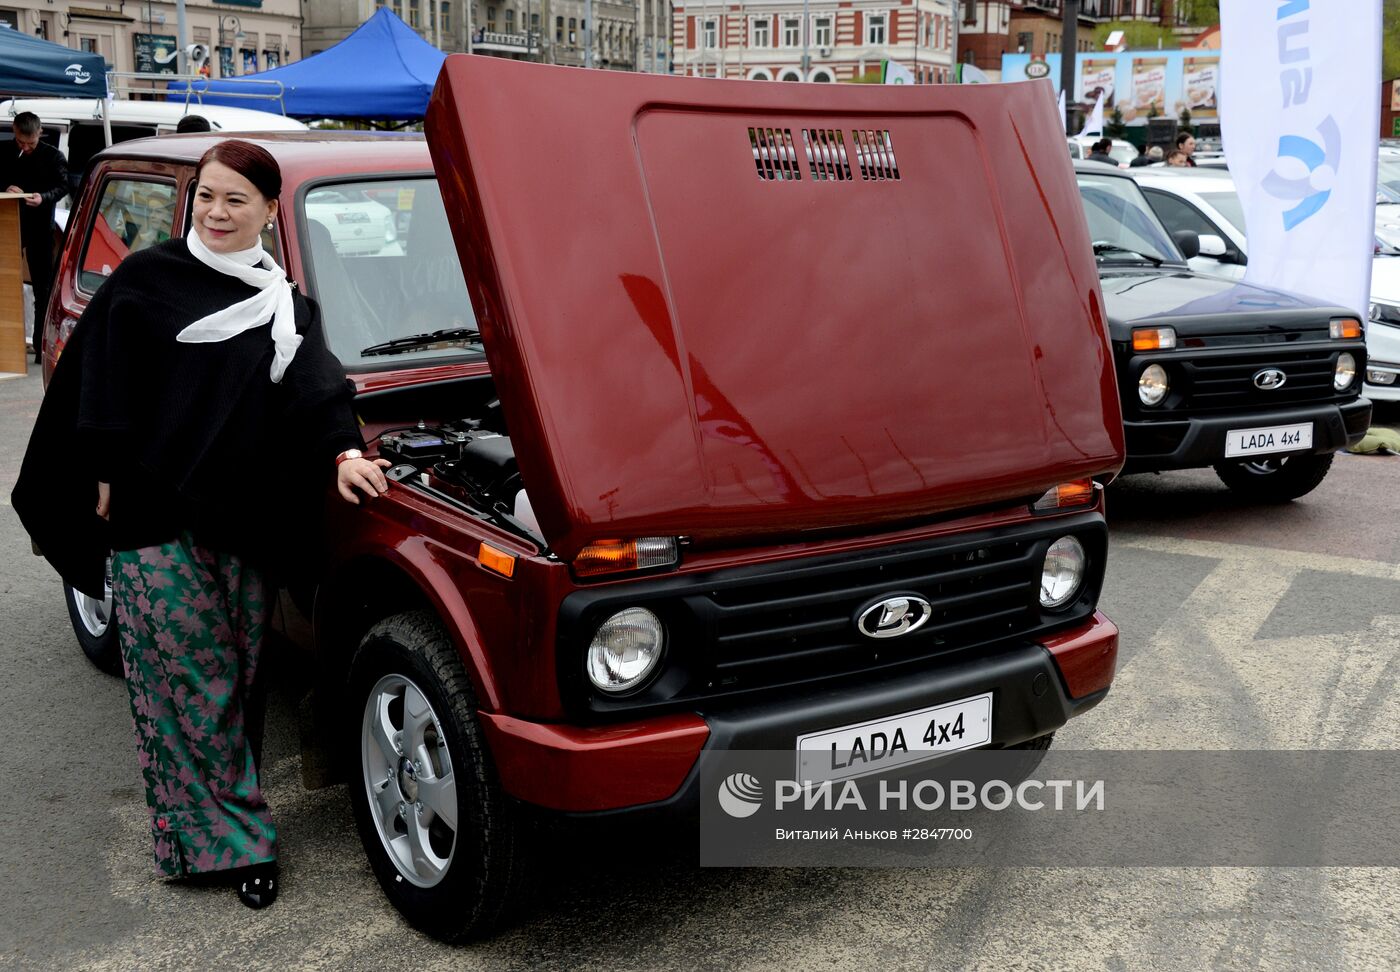 Выставка "Автосалон 2016" во Владивостоке